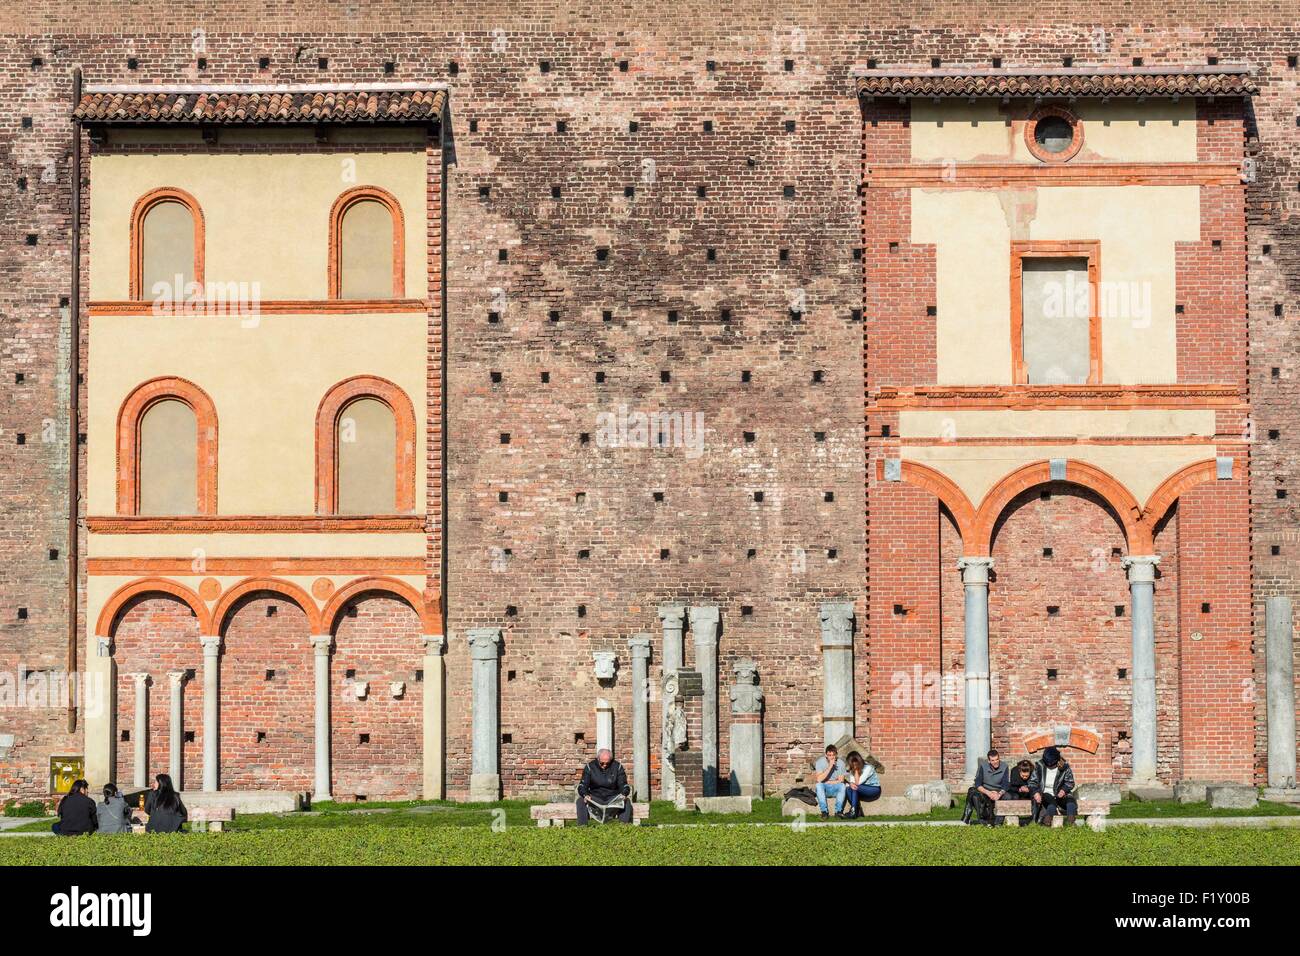 Italy, Lombardy, Milan, Castello Sforzesco (Sforza Castle) built in the 15th century by Francesco Sforza (Duke of Milan), courtyard Stock Photo